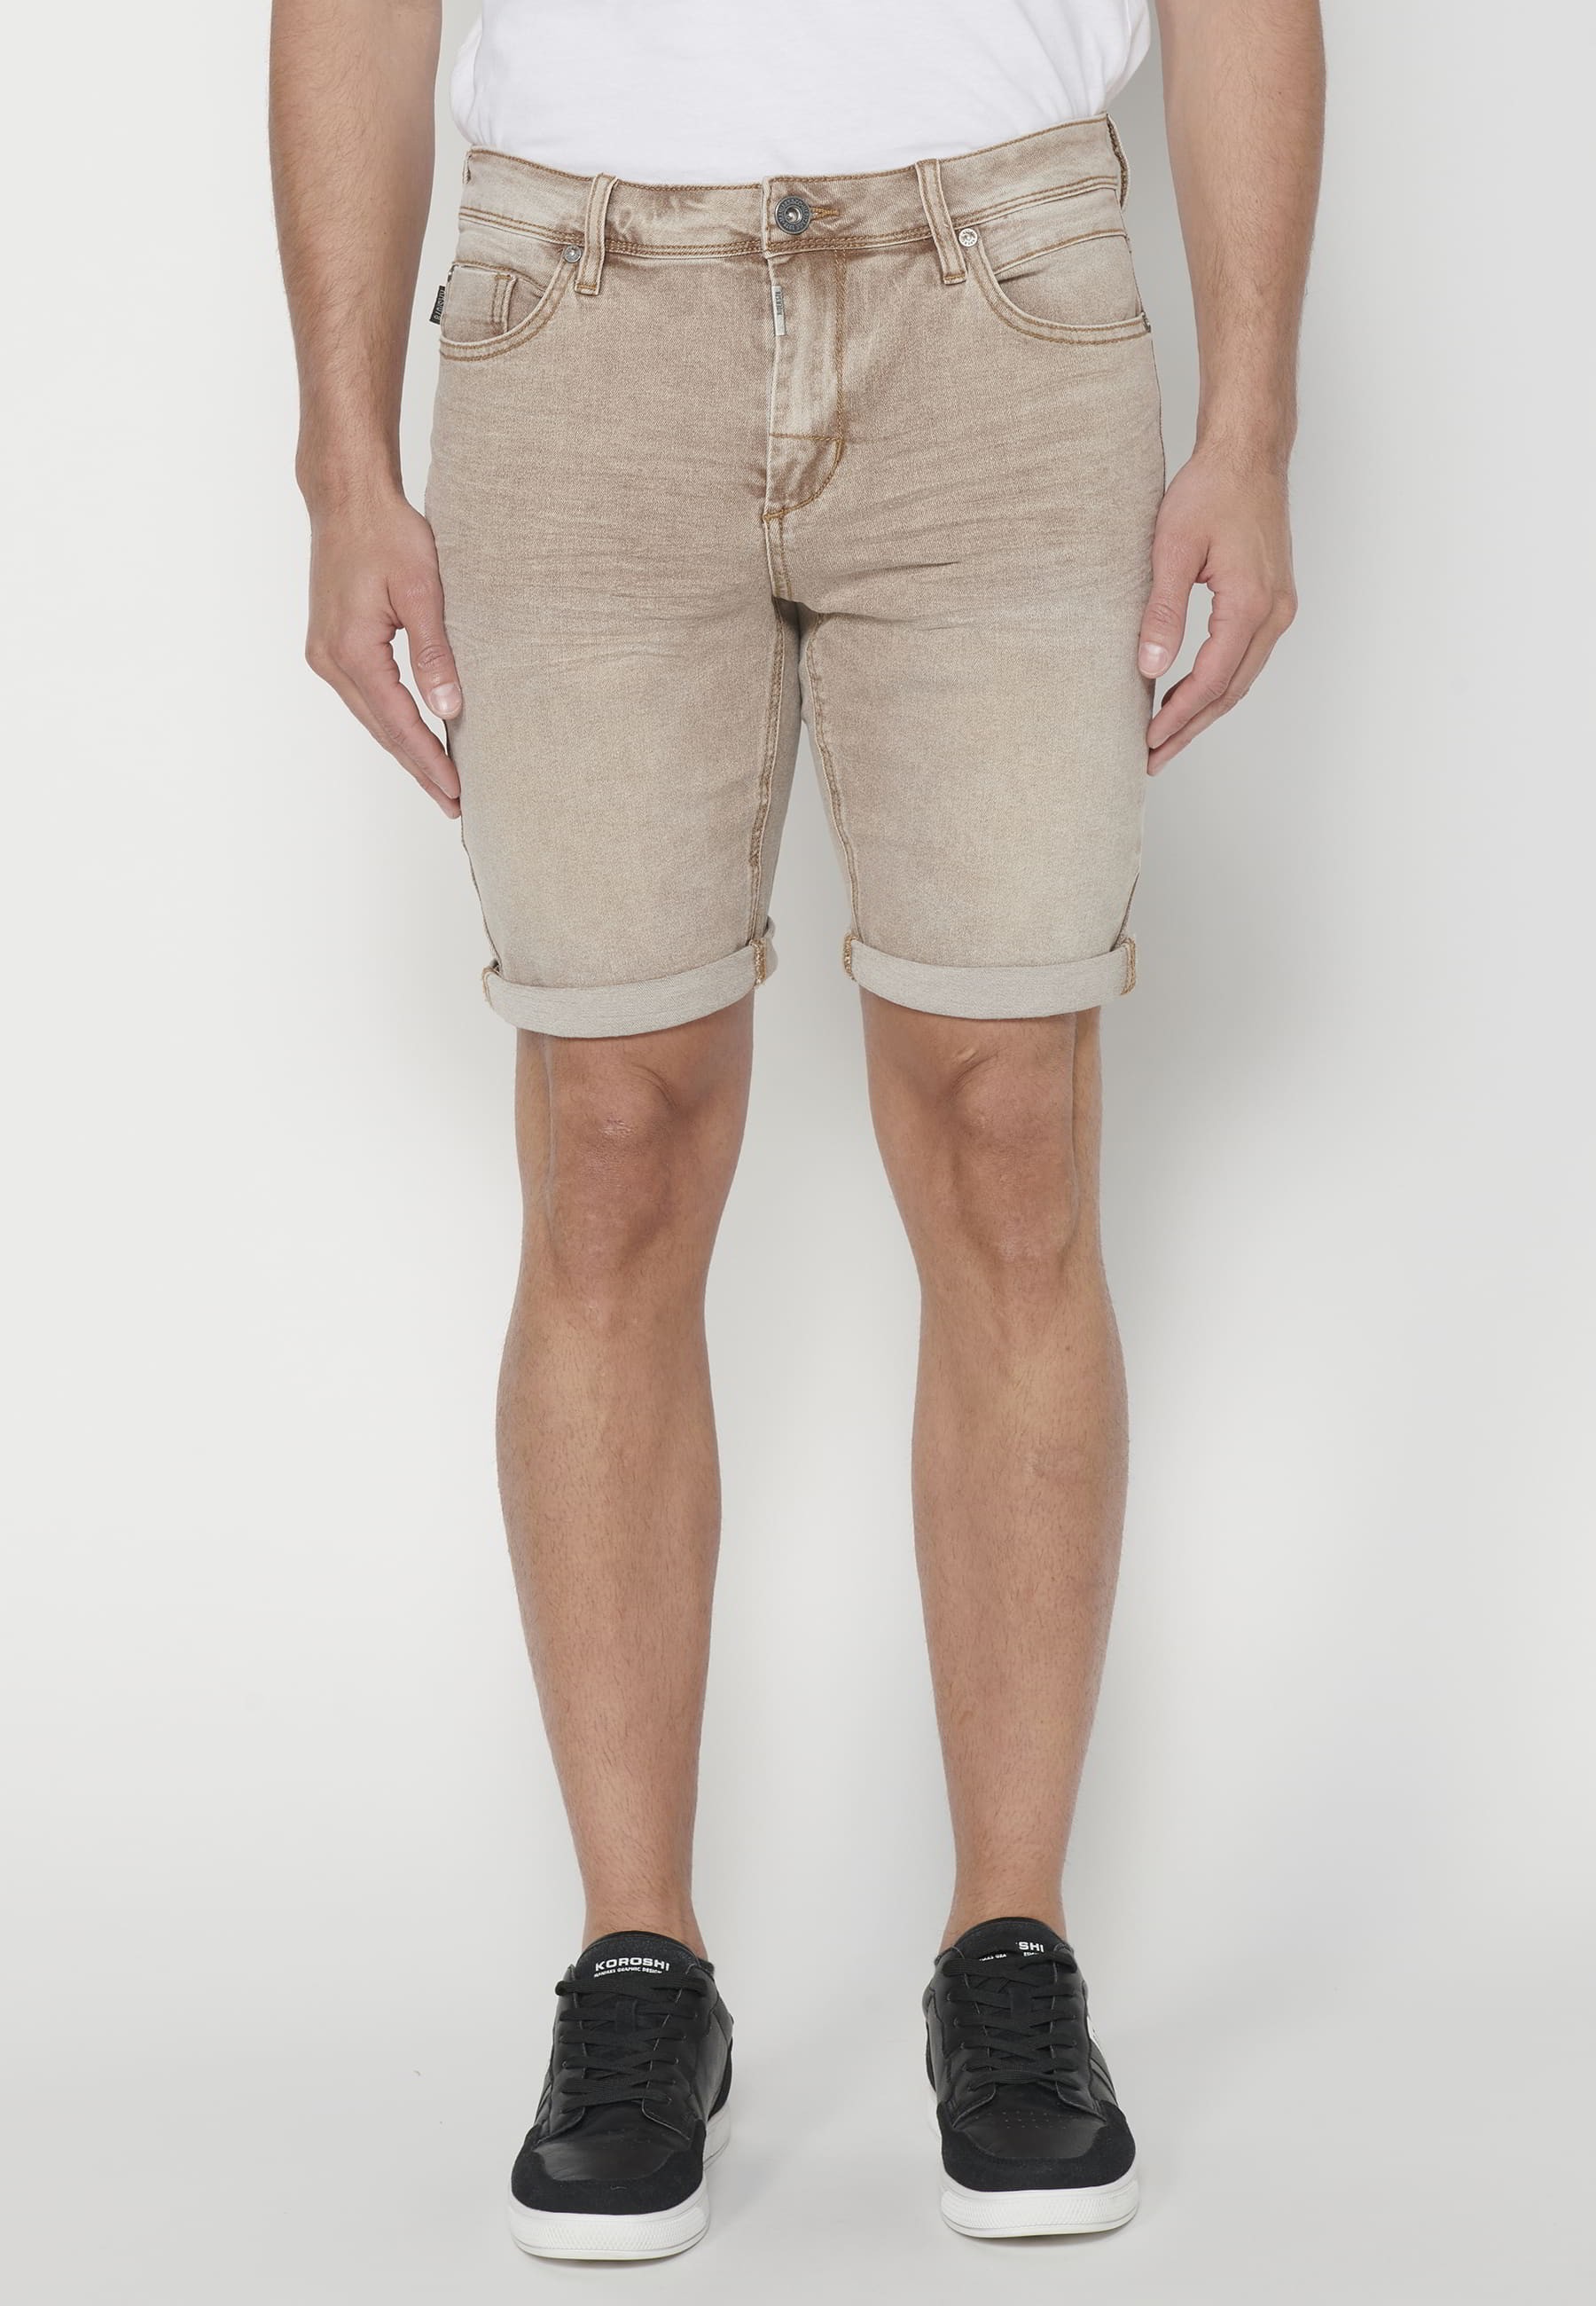 Herren-Bermuda-Shorts aus hellbraunem Denim mit Stretchanteil